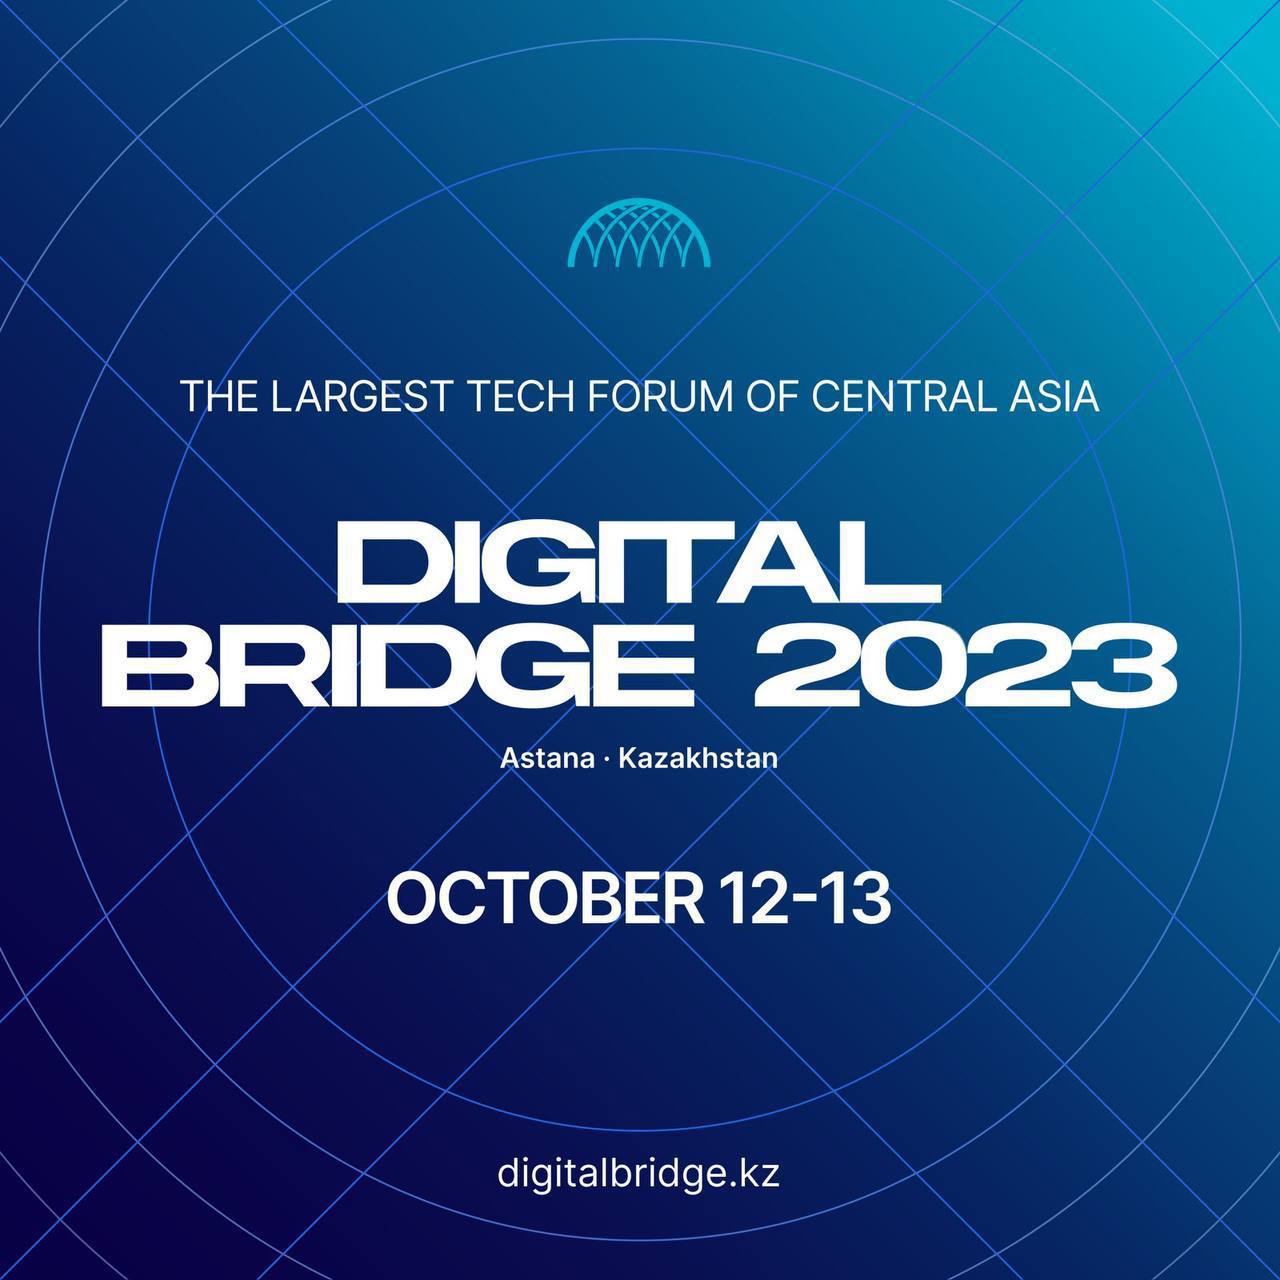 В МВЦ EXPO состоится технологический форум Digital Bridge 2023